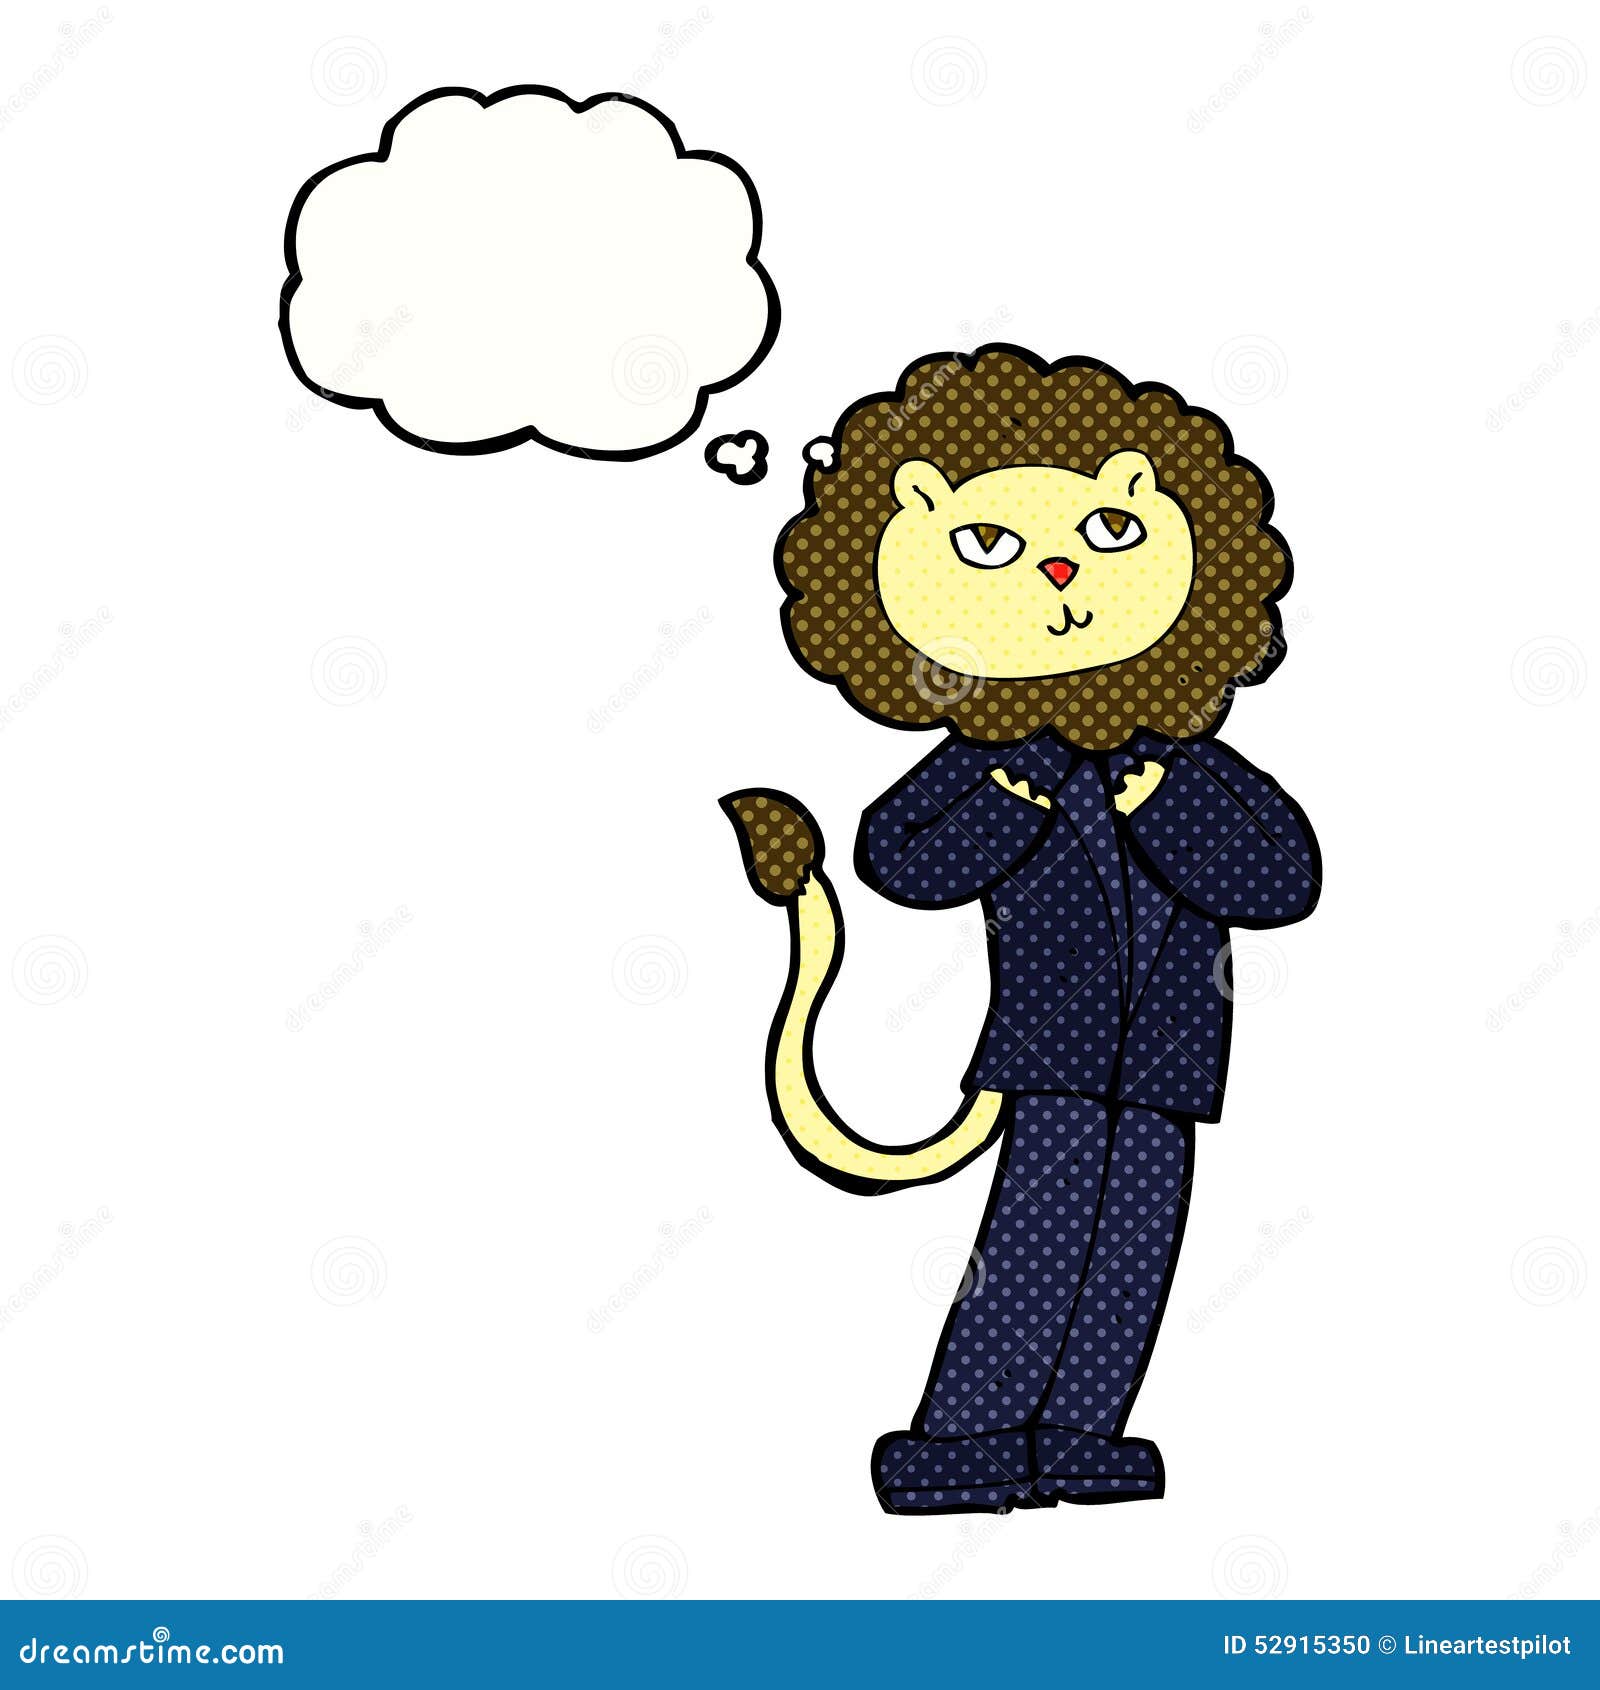 Desenho animado macaco louco com bolha de pensamento imagem vetorial de  lineartestpilot© 67587691